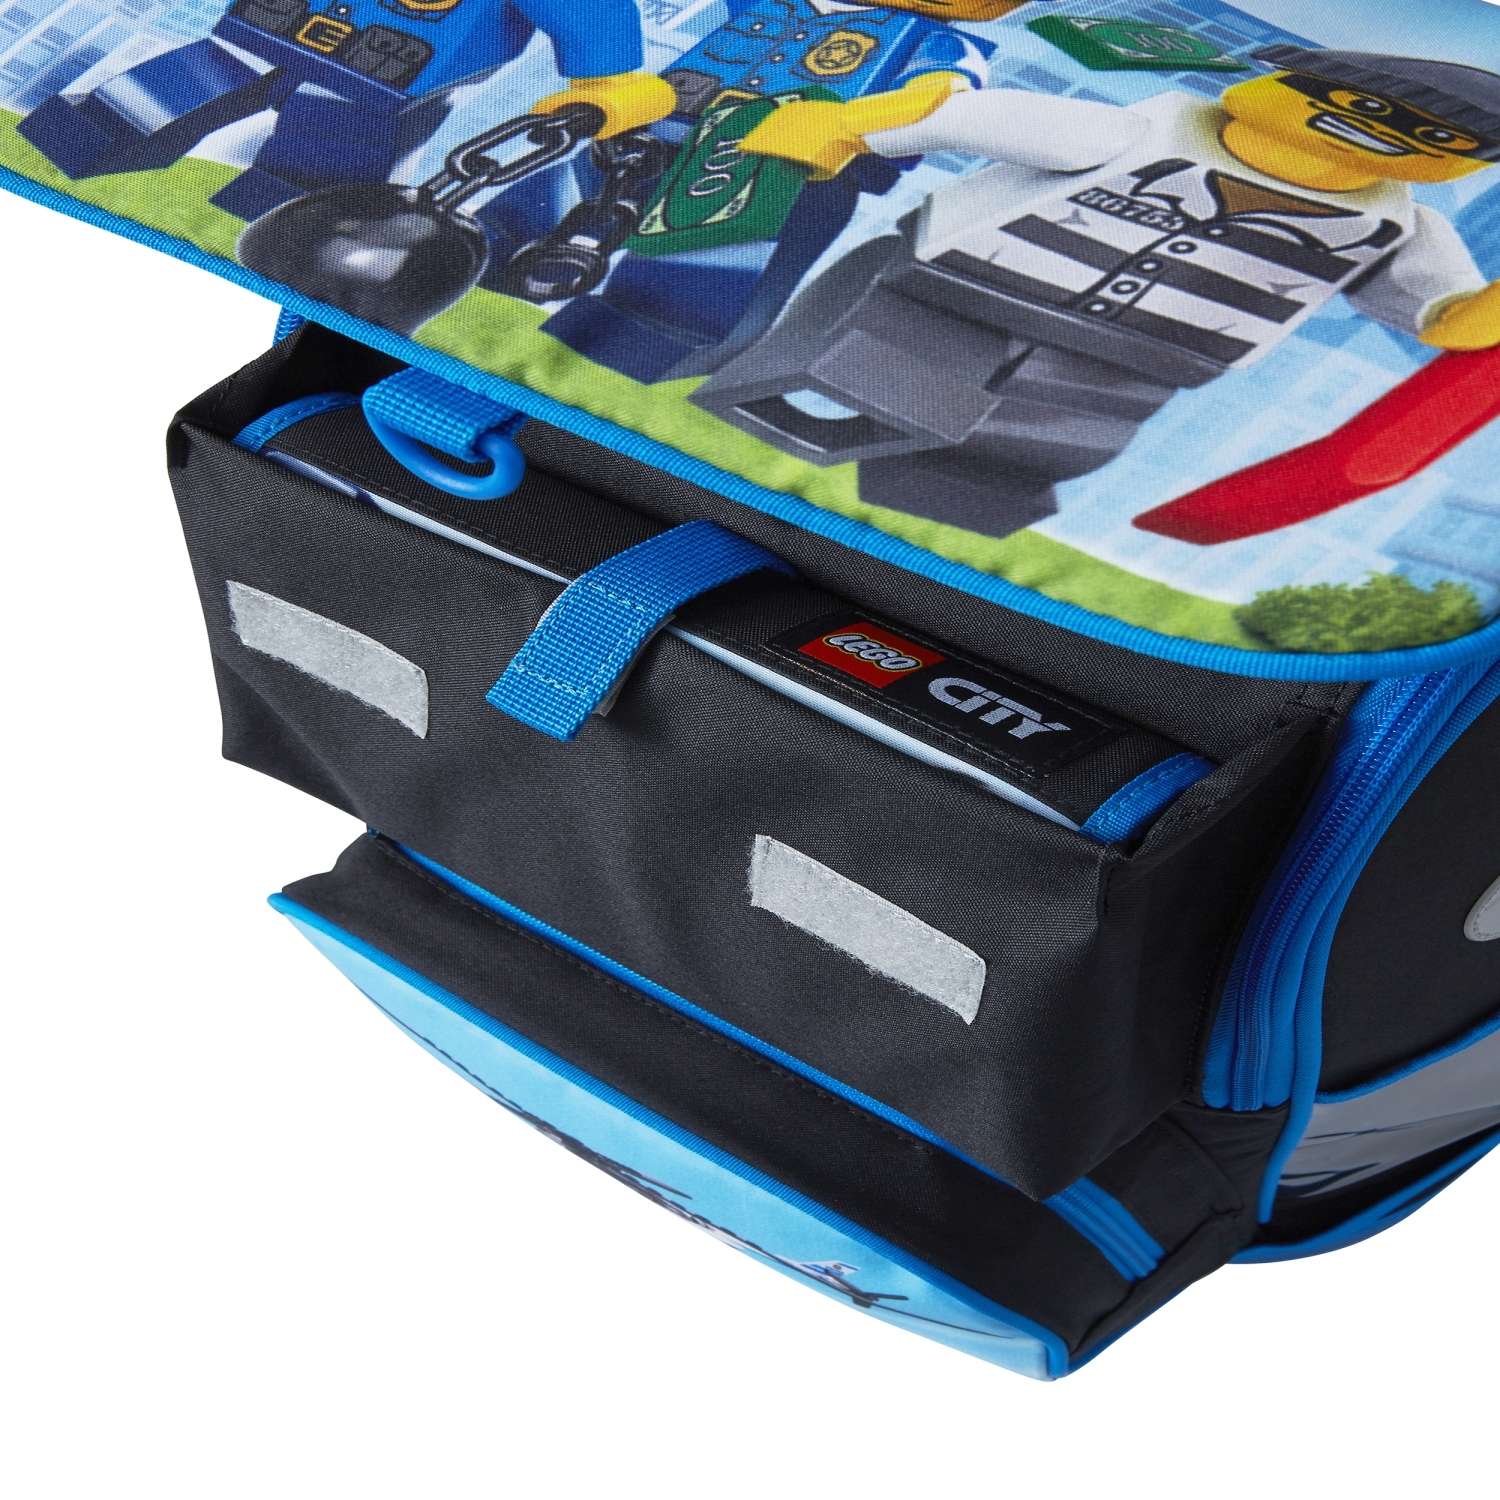 Рюкзак школьный LEGO с сумкой для обуви ланчбоксом и бутылкой City Police chopper - фото 4